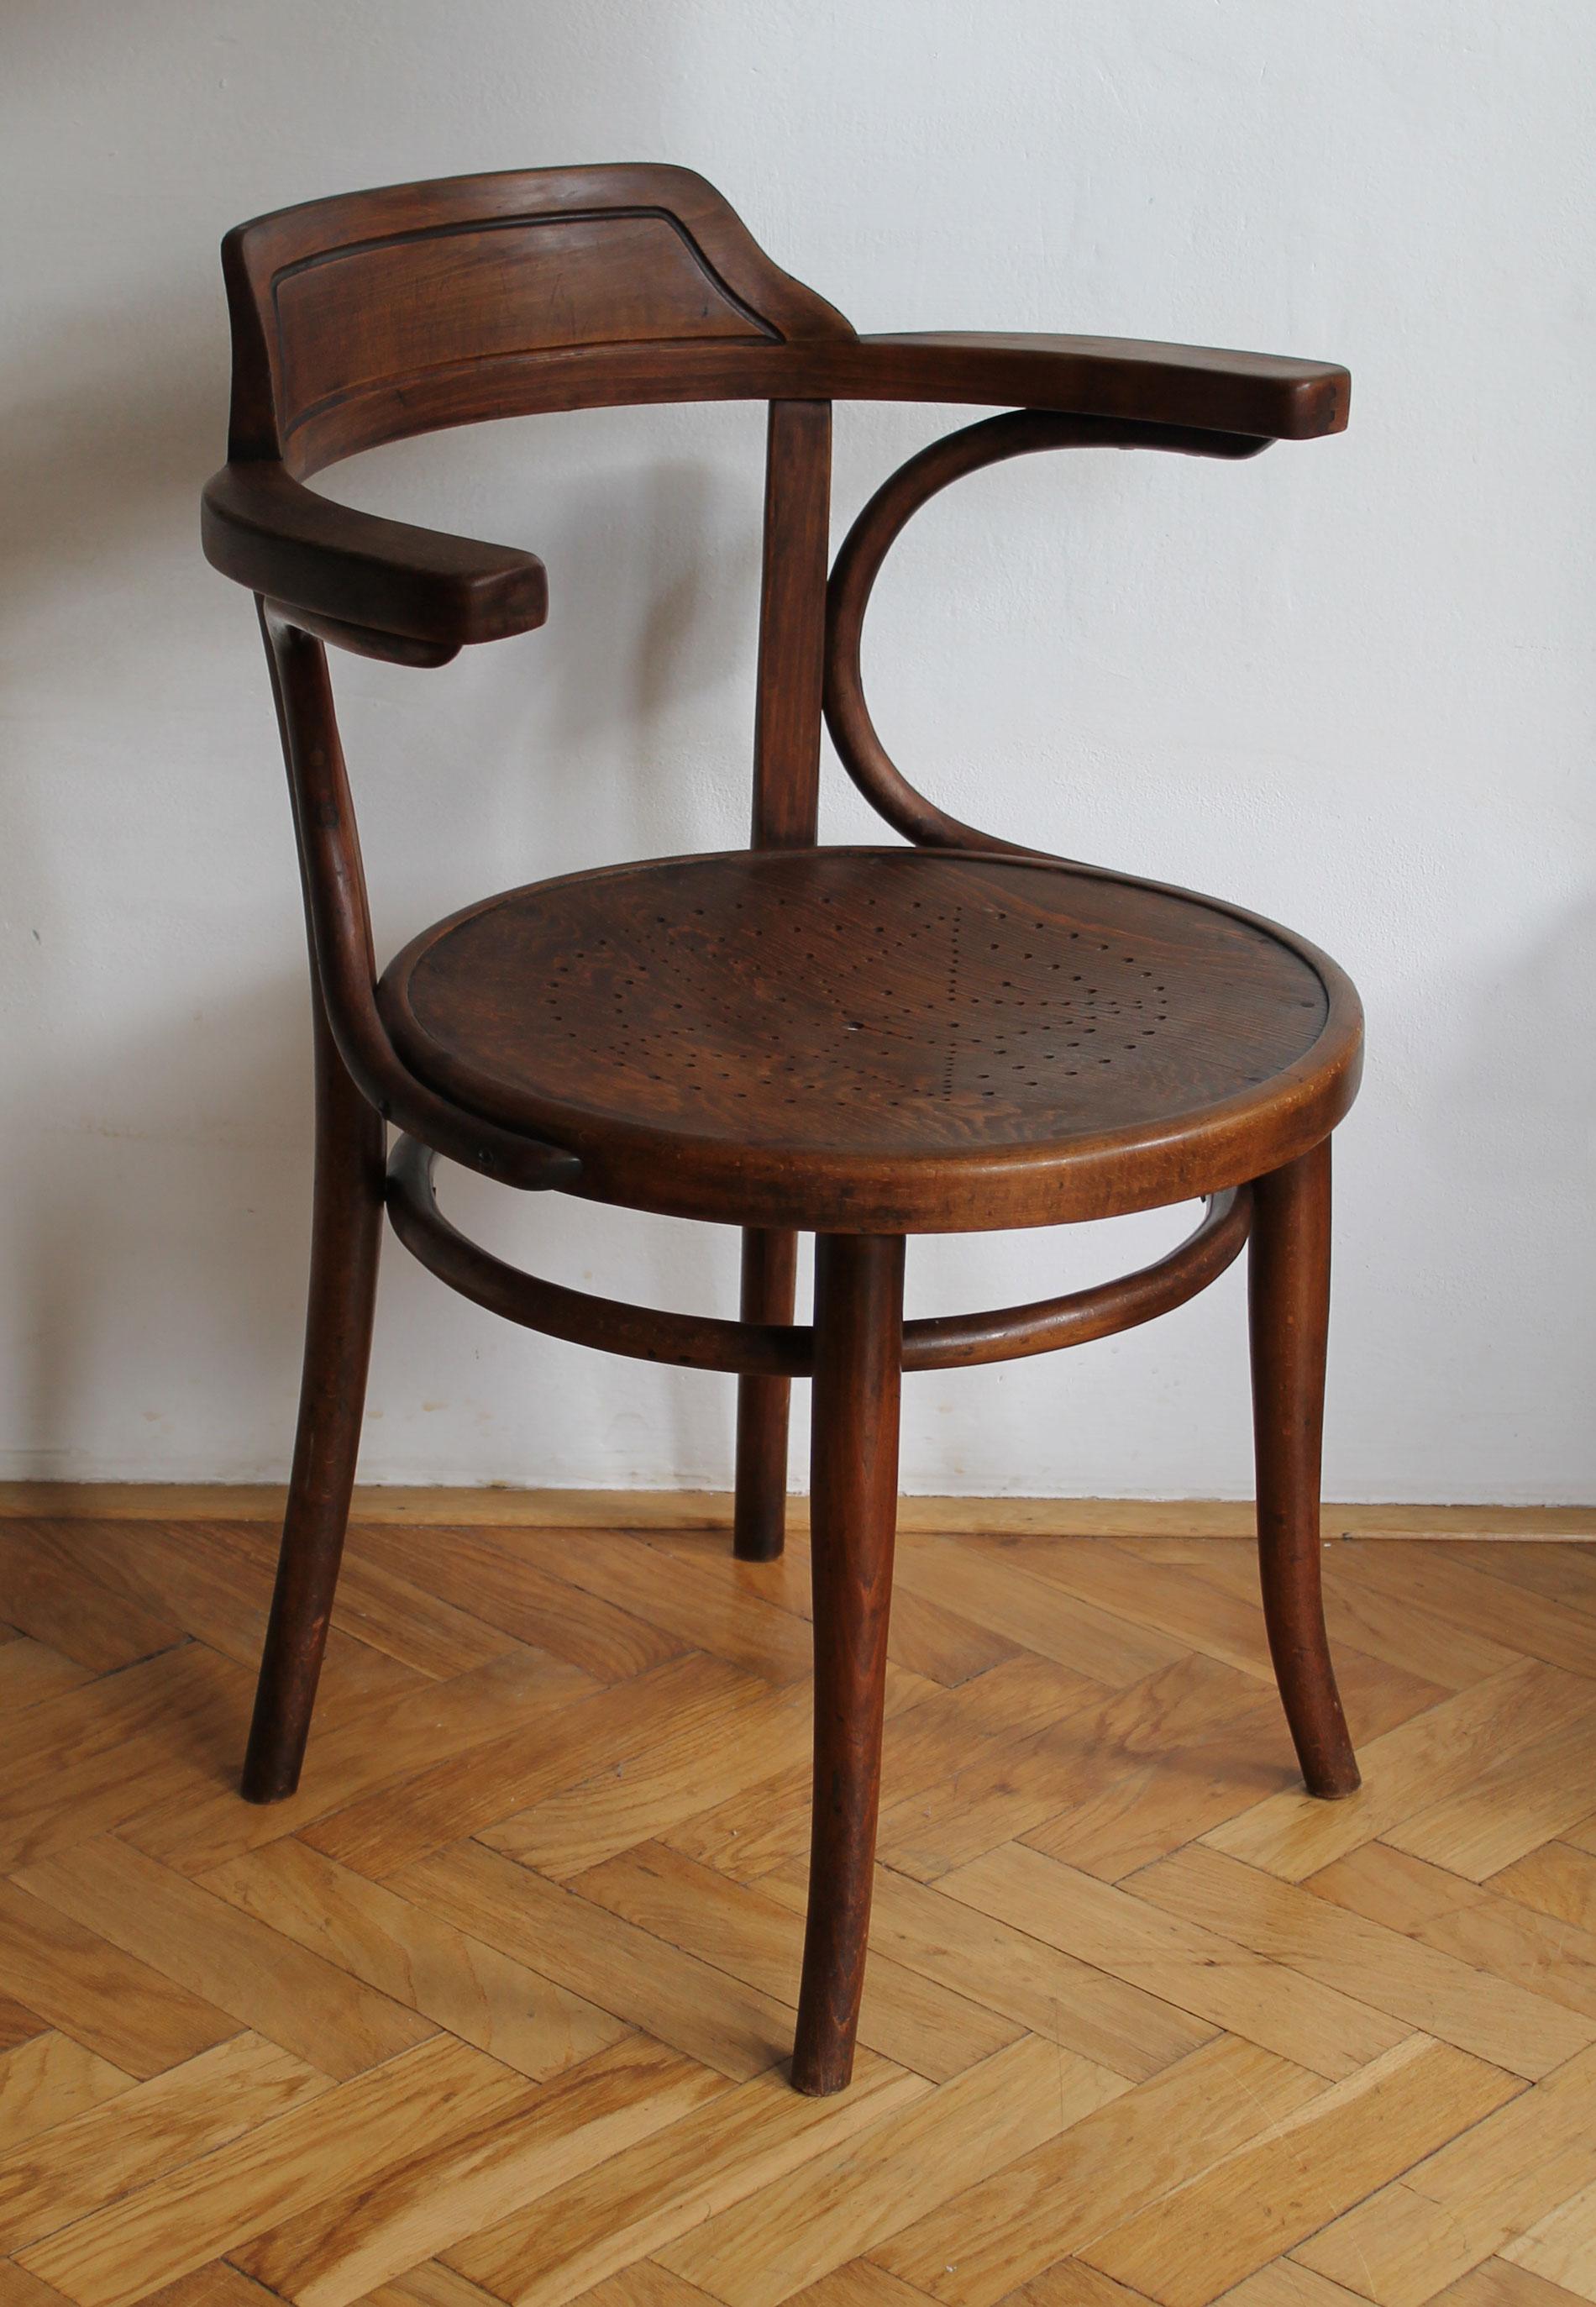 Cette chaise de bureau/dînette a été conçue à l'origine dans la seconde moitié du XIXe siècle et figure dans les catalogues de vente de Thonet sous le numéro de modèle 3. On pense que cette pièce particulière a été produite par la société Thonet